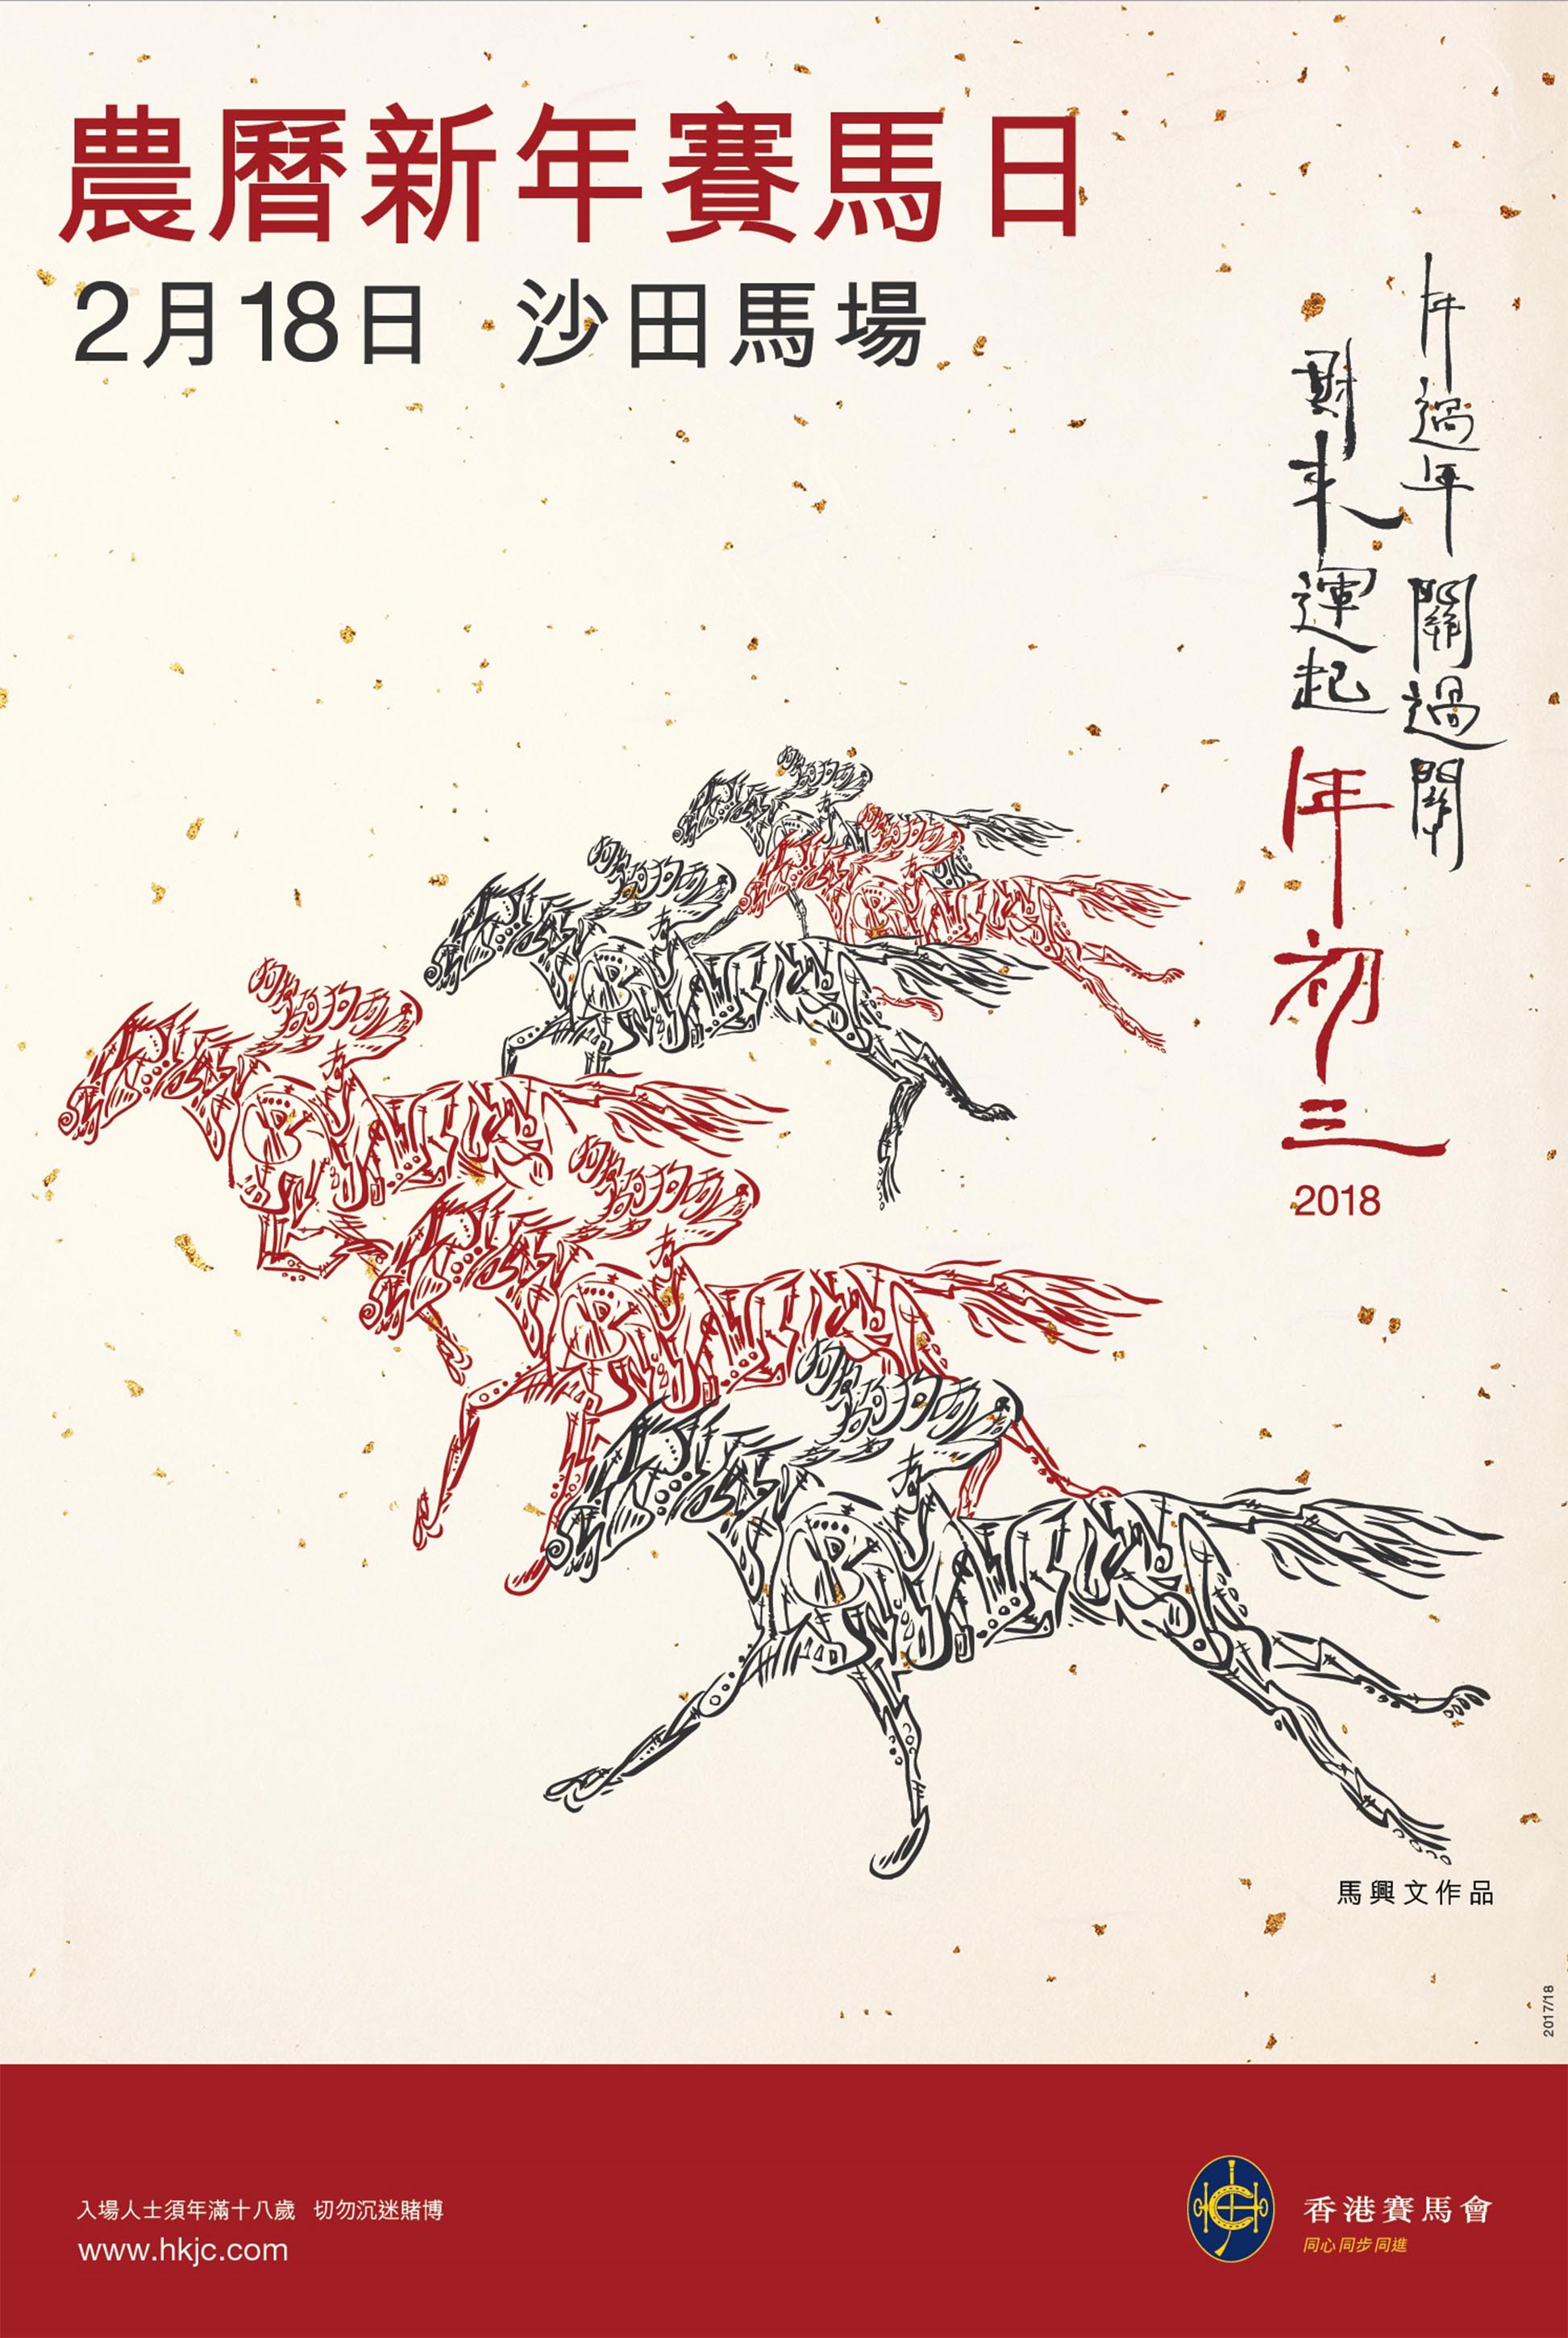 香港賽馬會將於大年初三 (2月18日)在沙田馬場舉行《農曆新年賽馬日》。